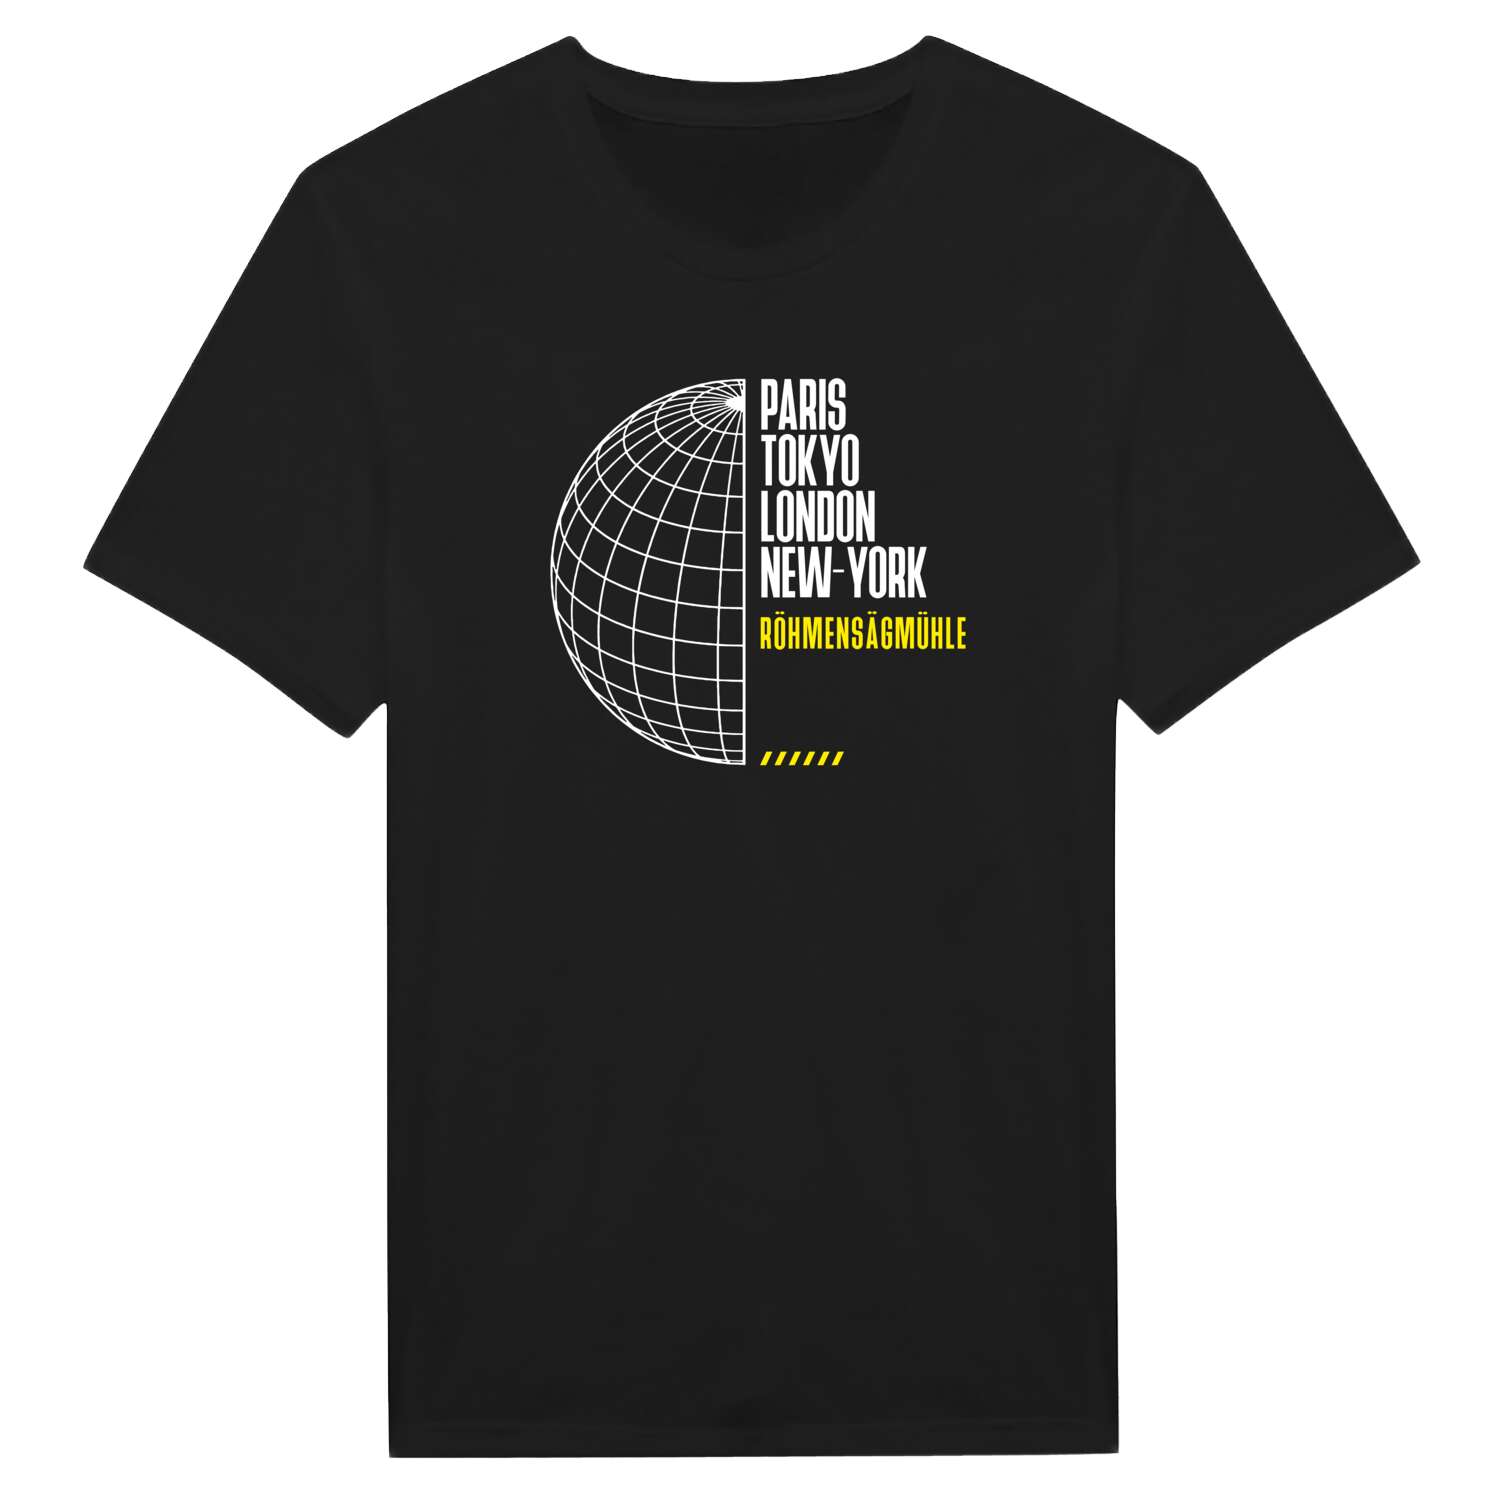 Röhmensägmühle T-Shirt »Paris Tokyo London«